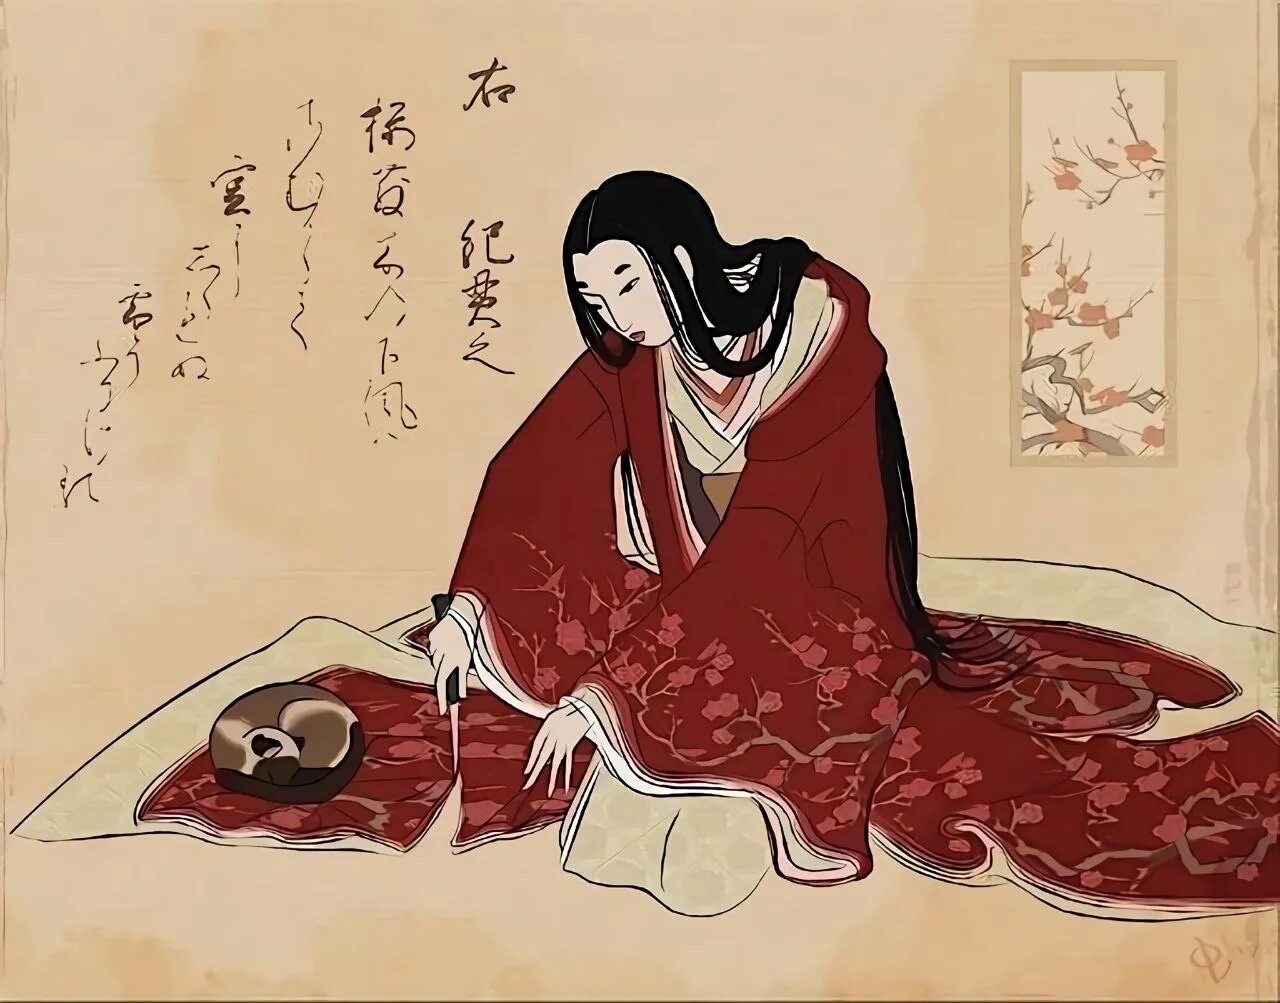 Японская гравюра женщина отрезает подол. Японская гравюра отрезает подол кимоно. Японская гравюра женщина отрезает подол кимоно. Женщина отрезает подол кимоно. Андзин с японского